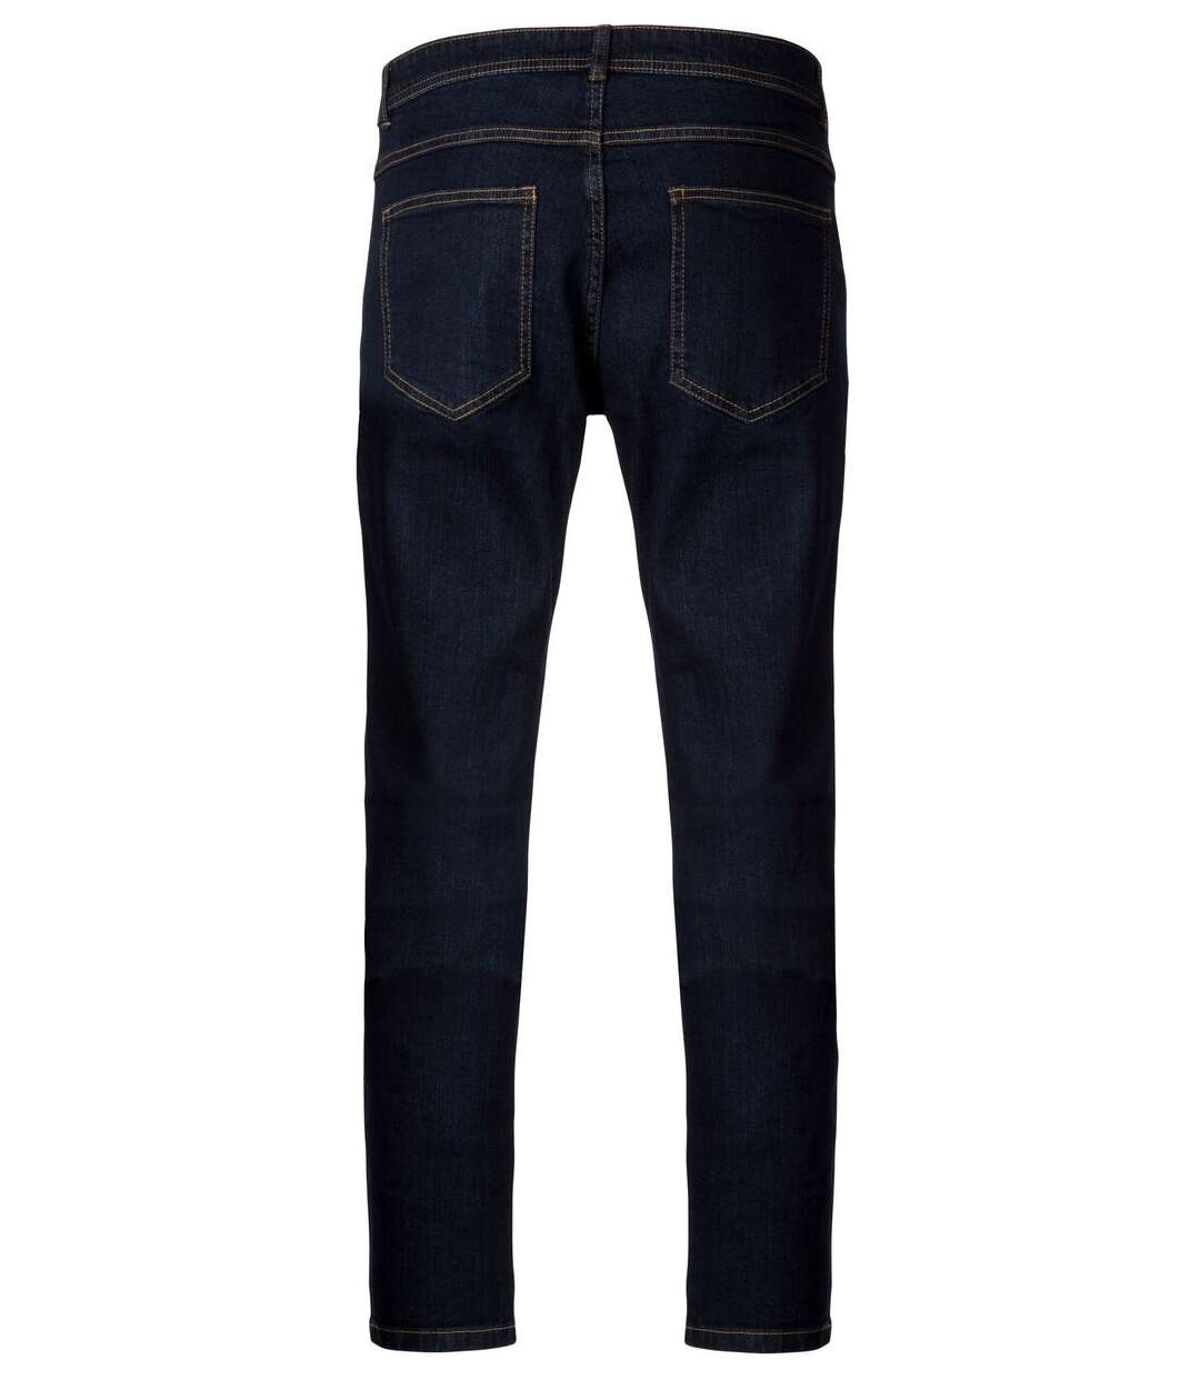 Pantalon jean pour homme - K742 - bleu